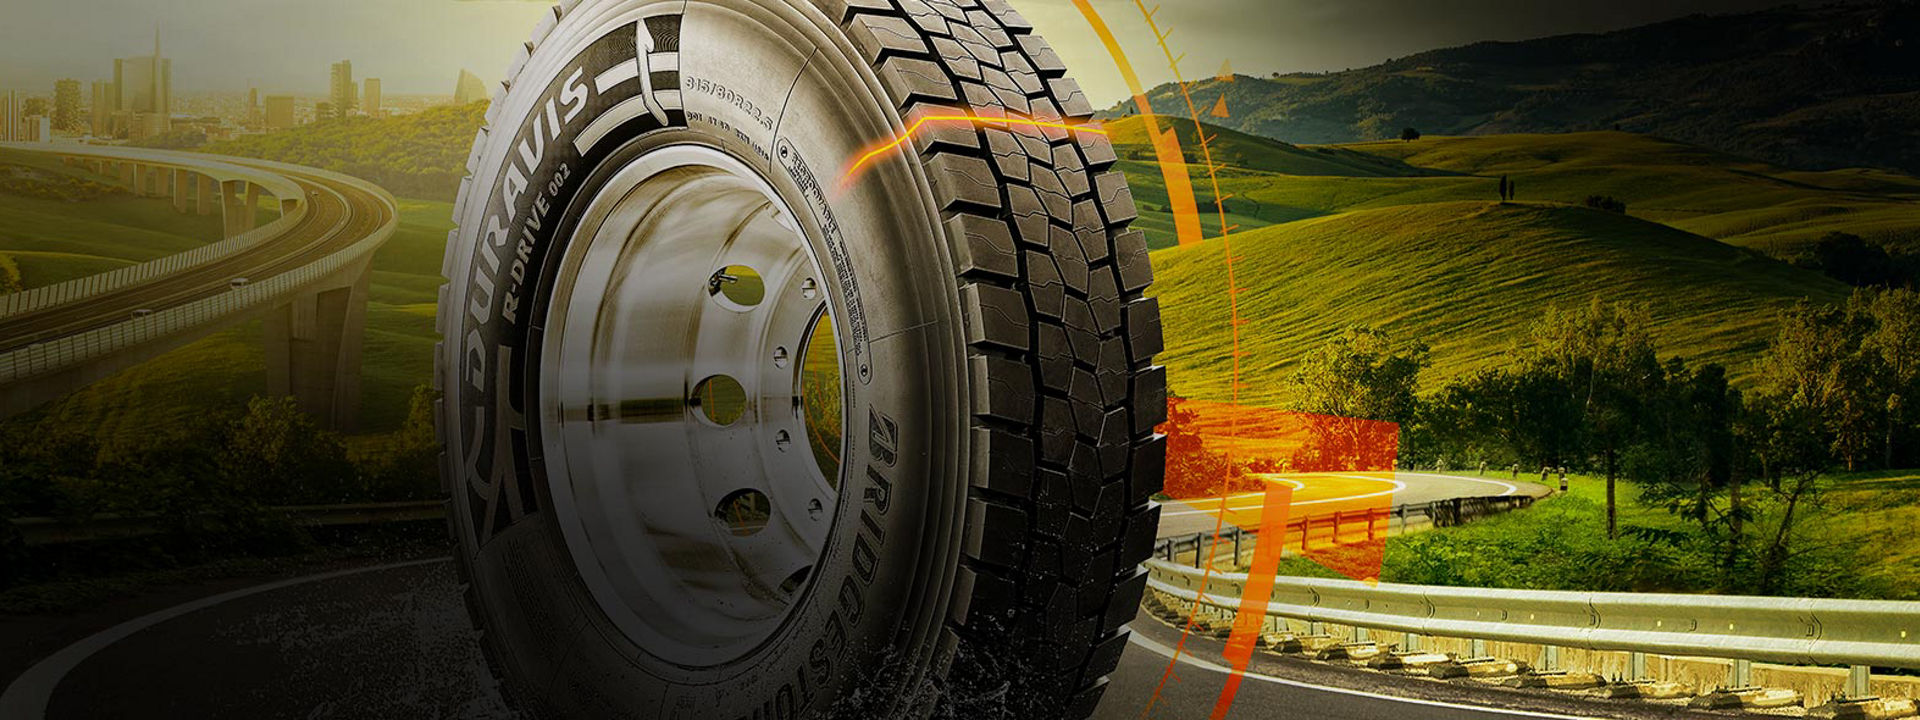 Kuvassa on Bridgestone Duravis R002 -rengas valtatiellä sekä grafiikka, jossa kerrotaan renkaan ainutlaatuisista ominaisuuksista.